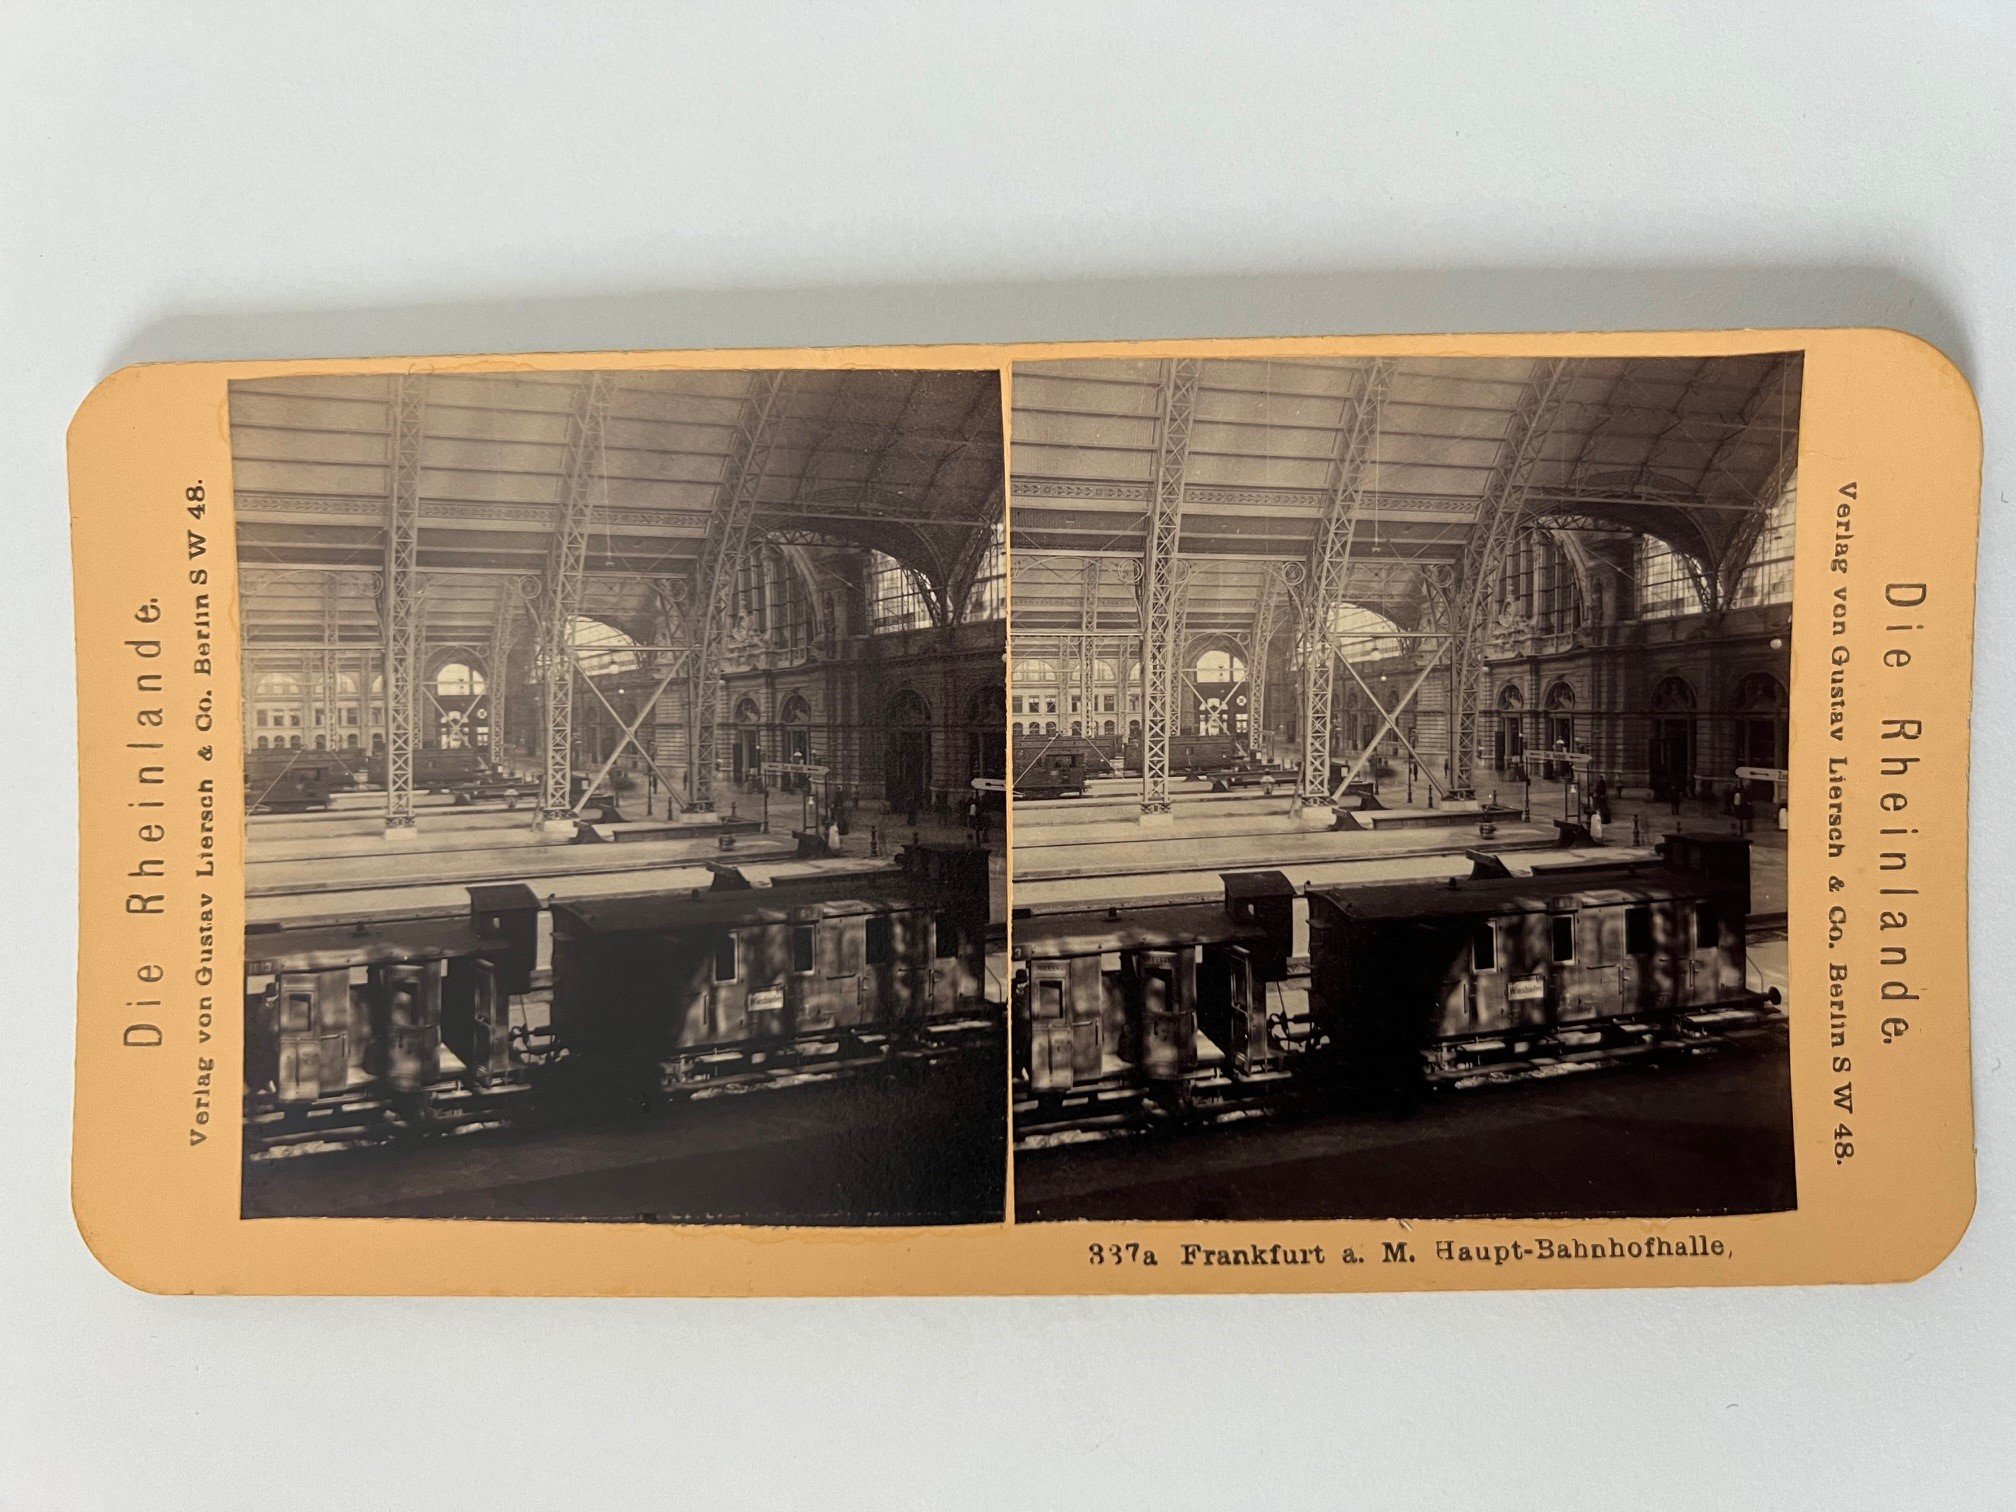 Stereobild, Verlag Gustav Liersch, Frankfurt, Nr. 337a, Haupt-Bahnhofhalle, ca. 1888. (Taunus-Rhein-Main - Regionalgeschichtliche Sammlung Dr. Stefan Naas CC BY-NC-SA)